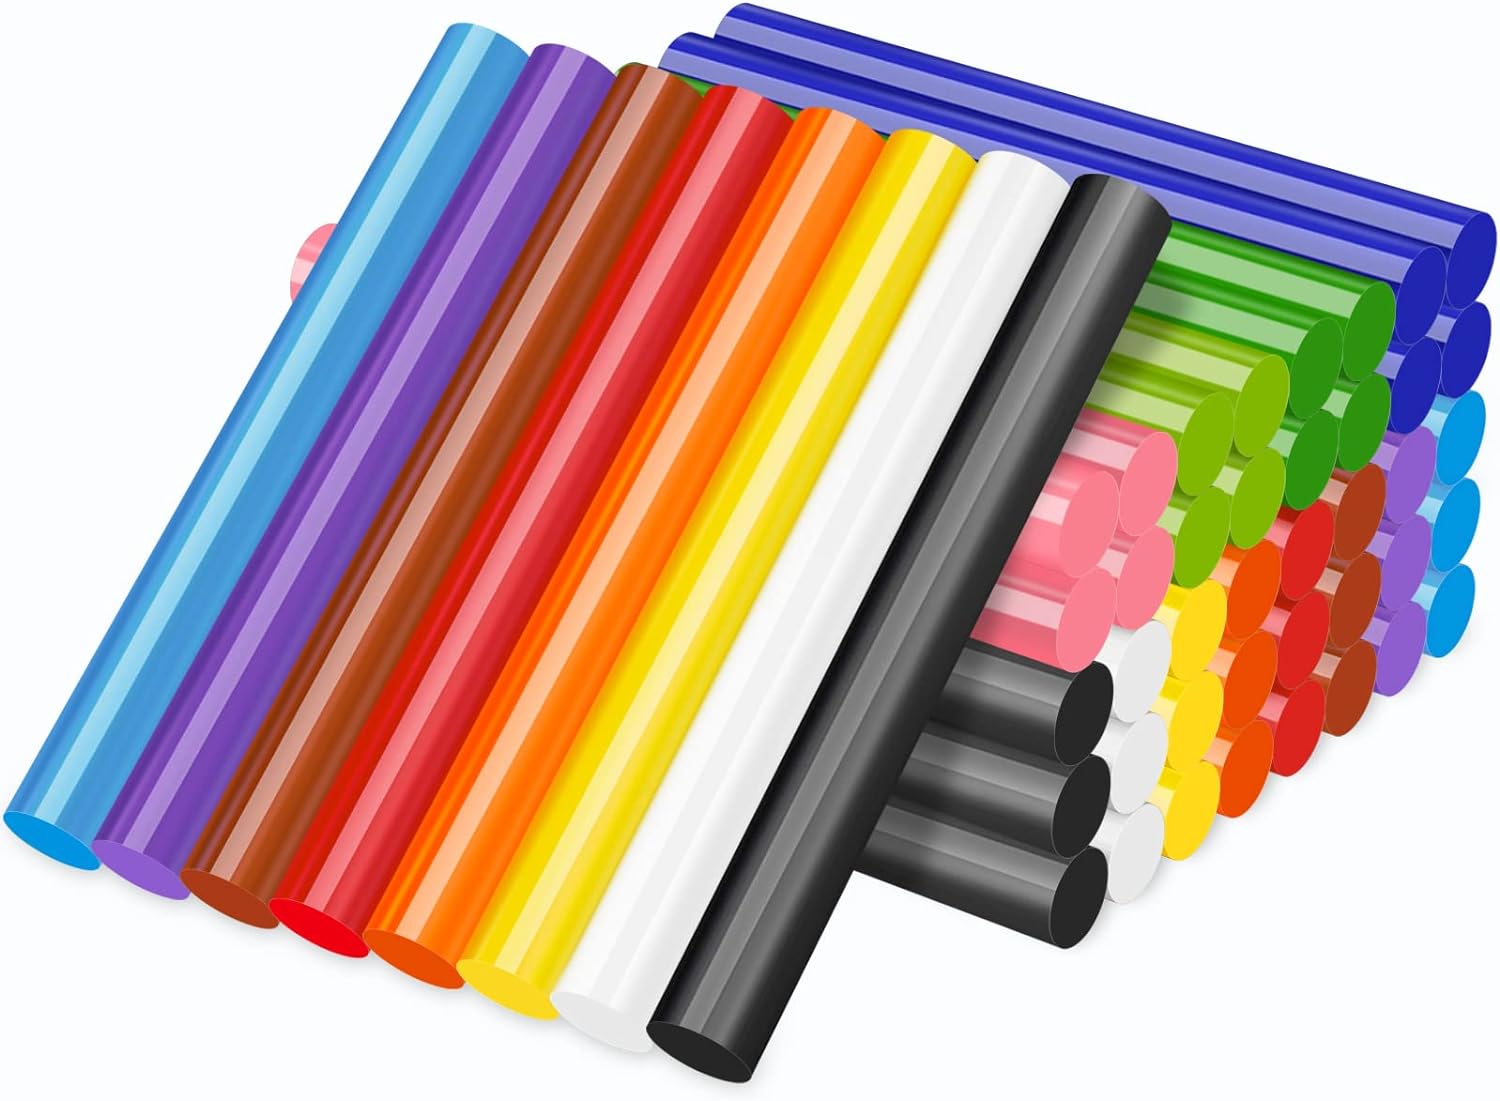 Manarty Colored Hot Glue Sticks Full size, 48 Pcs Hot Melt Glue Sticks Color, 12 Colorful Eva Adhesive Purpose Glue Stick Standard for